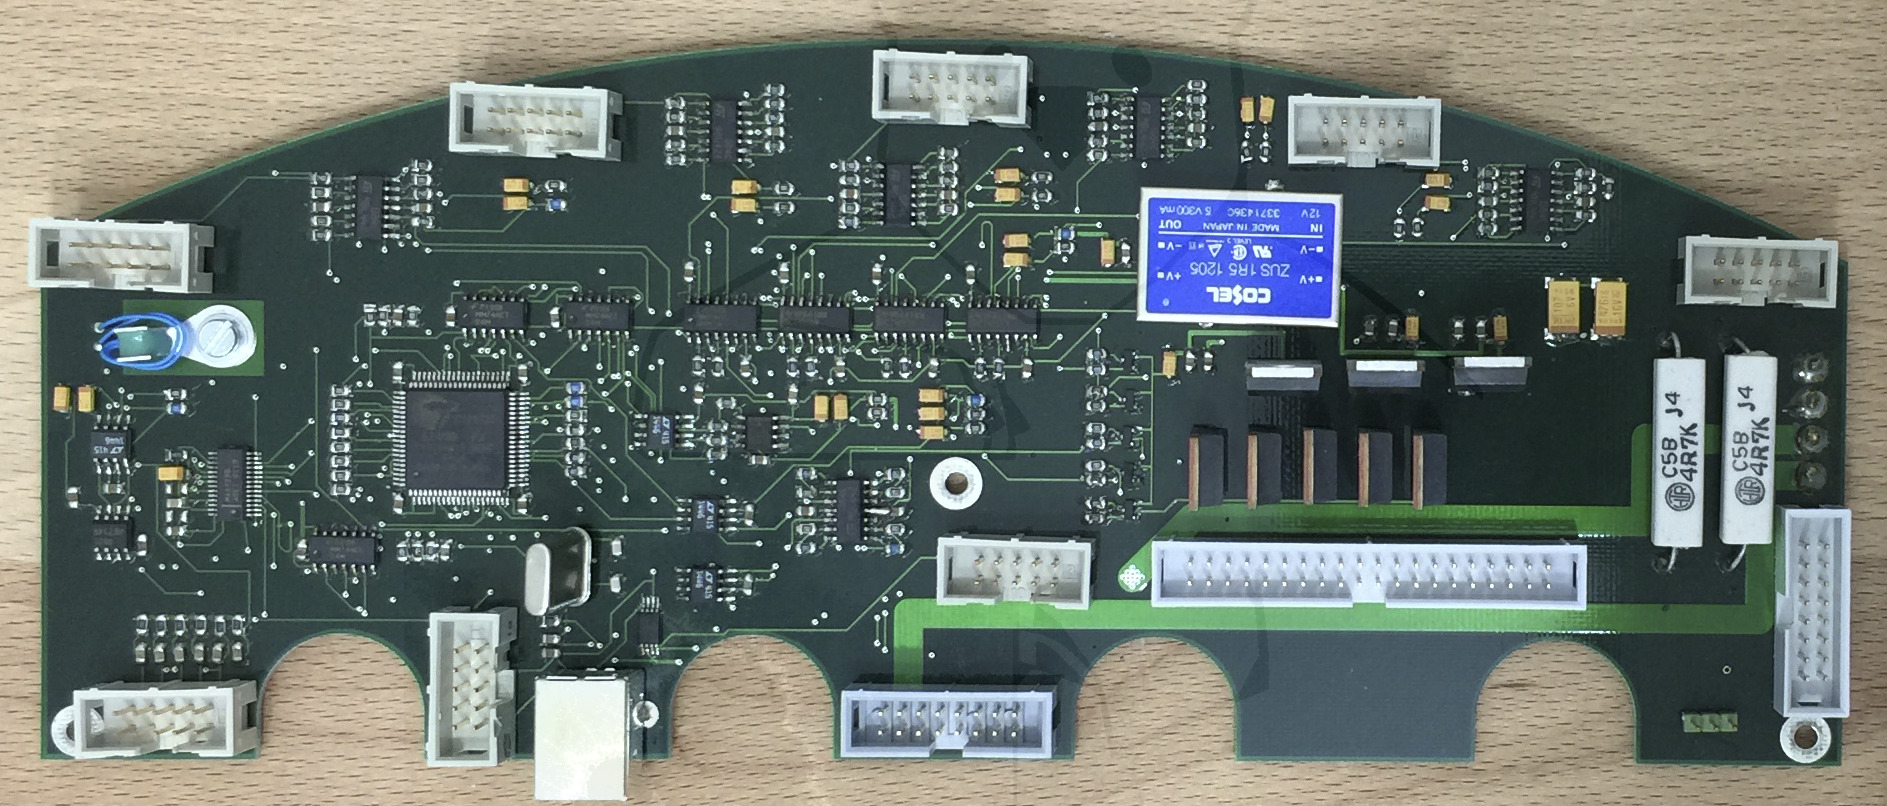 Entwicklung des Multiplate® - Etwas Zeit zum spielen, getestet wird ein neues CPU-Design inkl. USB Anbindung. Der Cypress macht im Zusammenspiel mit dem grausigen VIA-Chipsatz zu viele Probleme bei der USB Übertragung. Es bleibt also beim ATMEGA mit RS232.